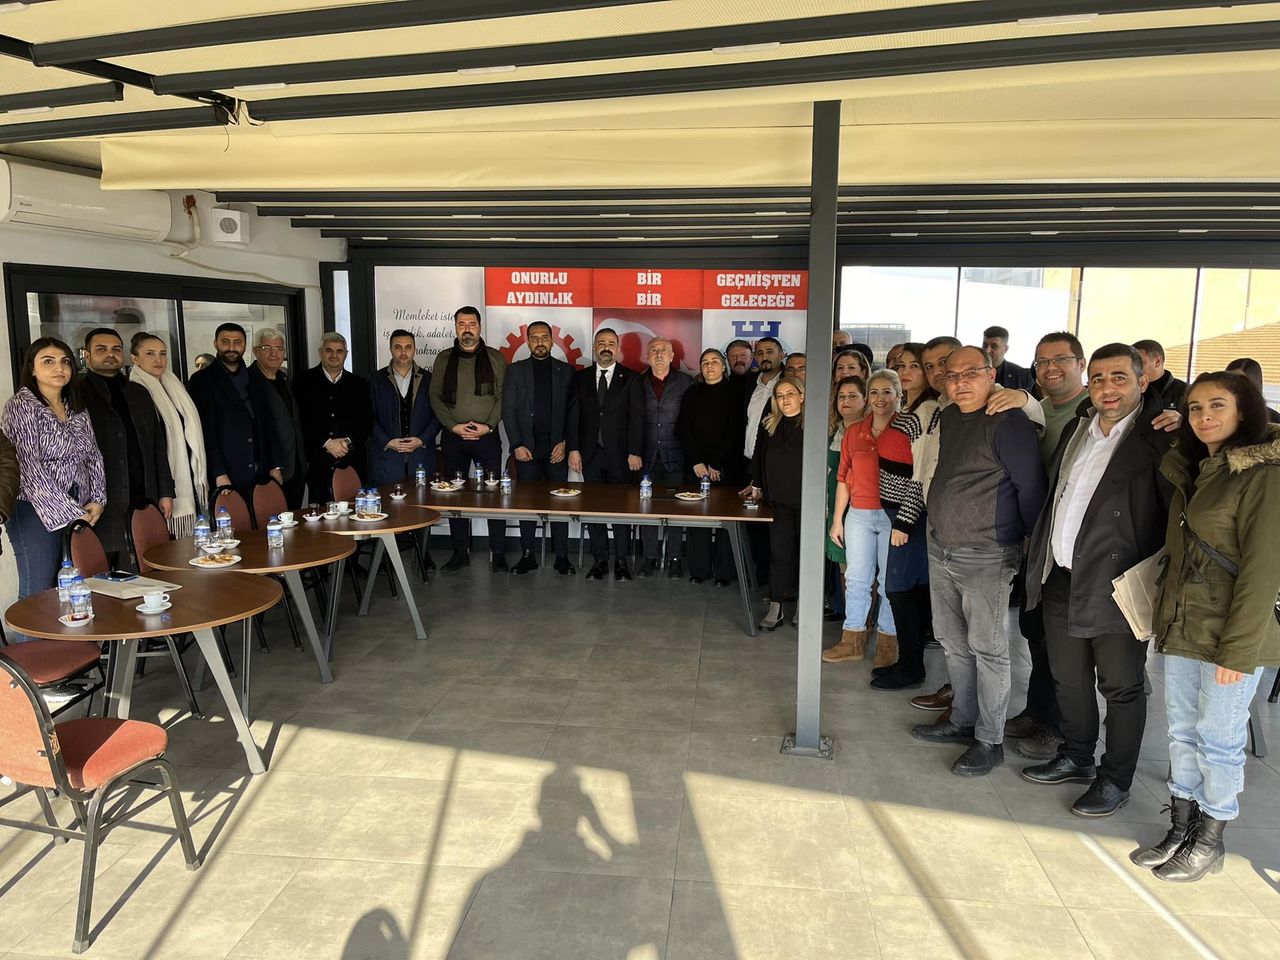 CHP İzmir İl Başkanlığı, DİSK Ege Bölge Temsilciliği ile buluştu ve mitinge destek çağrısı yaptı.